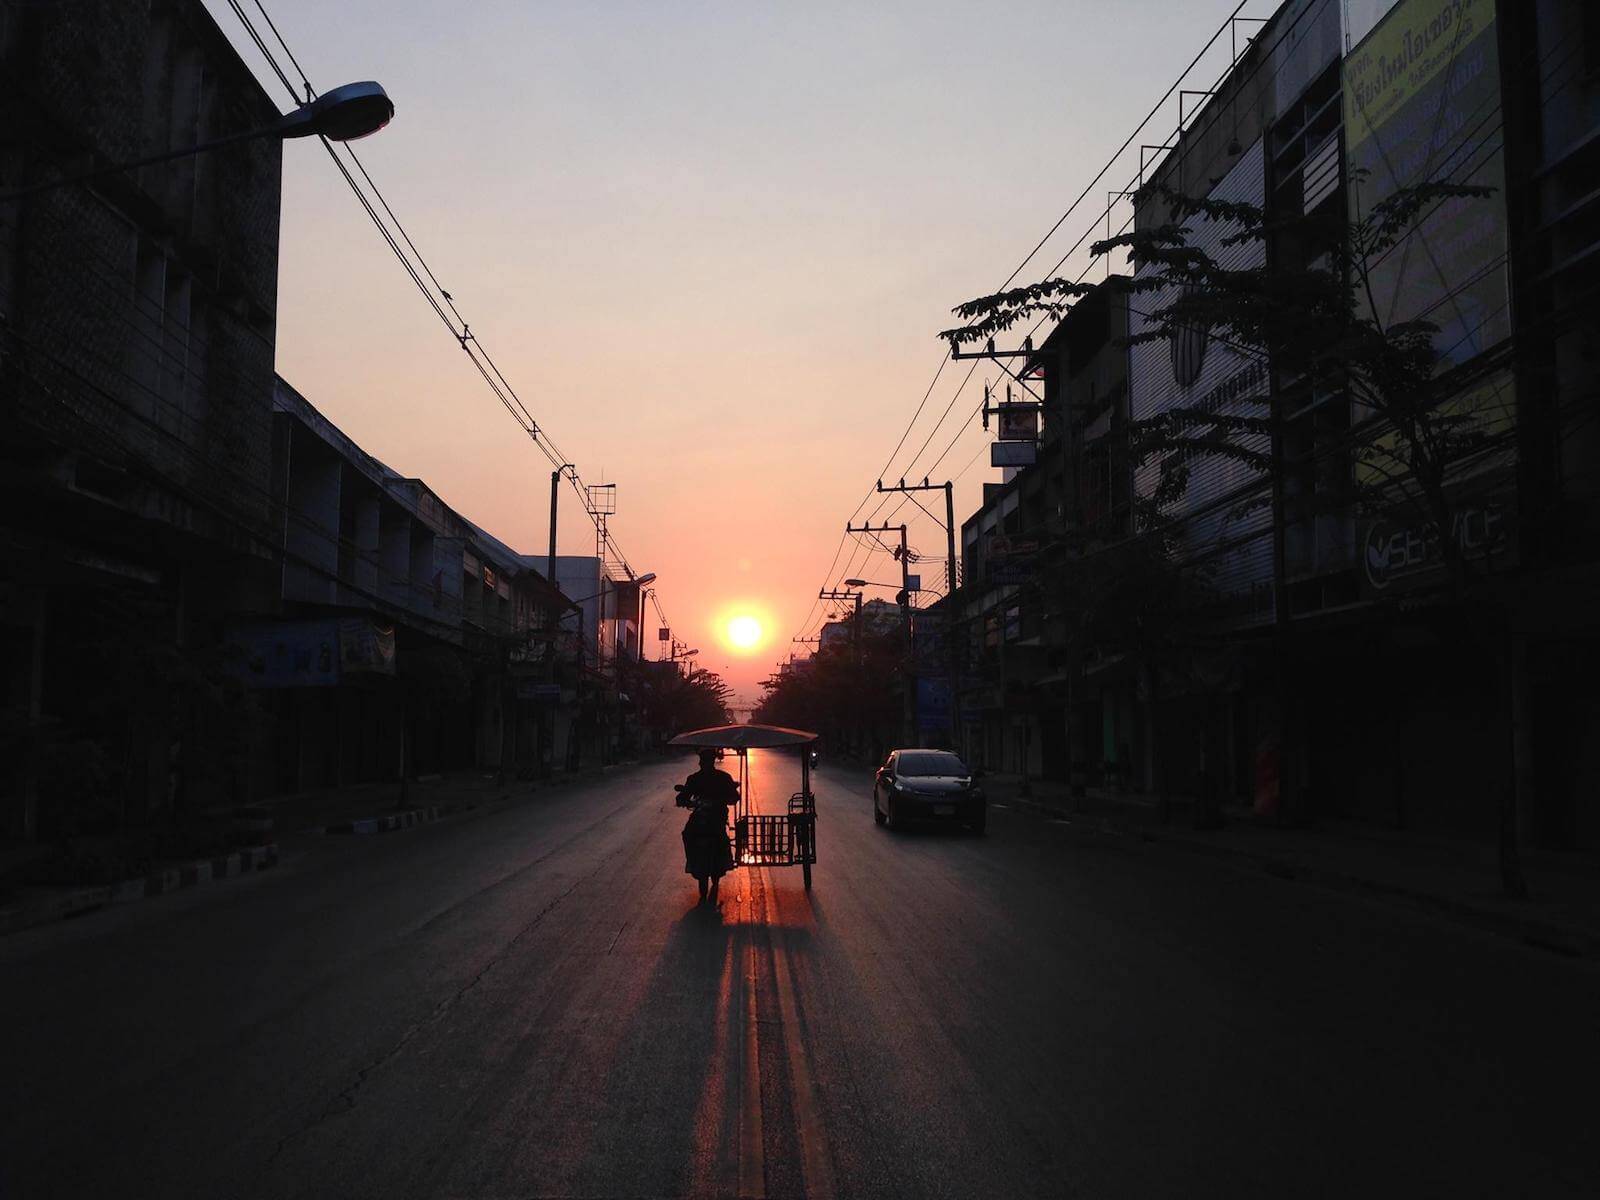 tuk-tuk-chiang-mai-thailand-sunrise-2014-travel.jpg